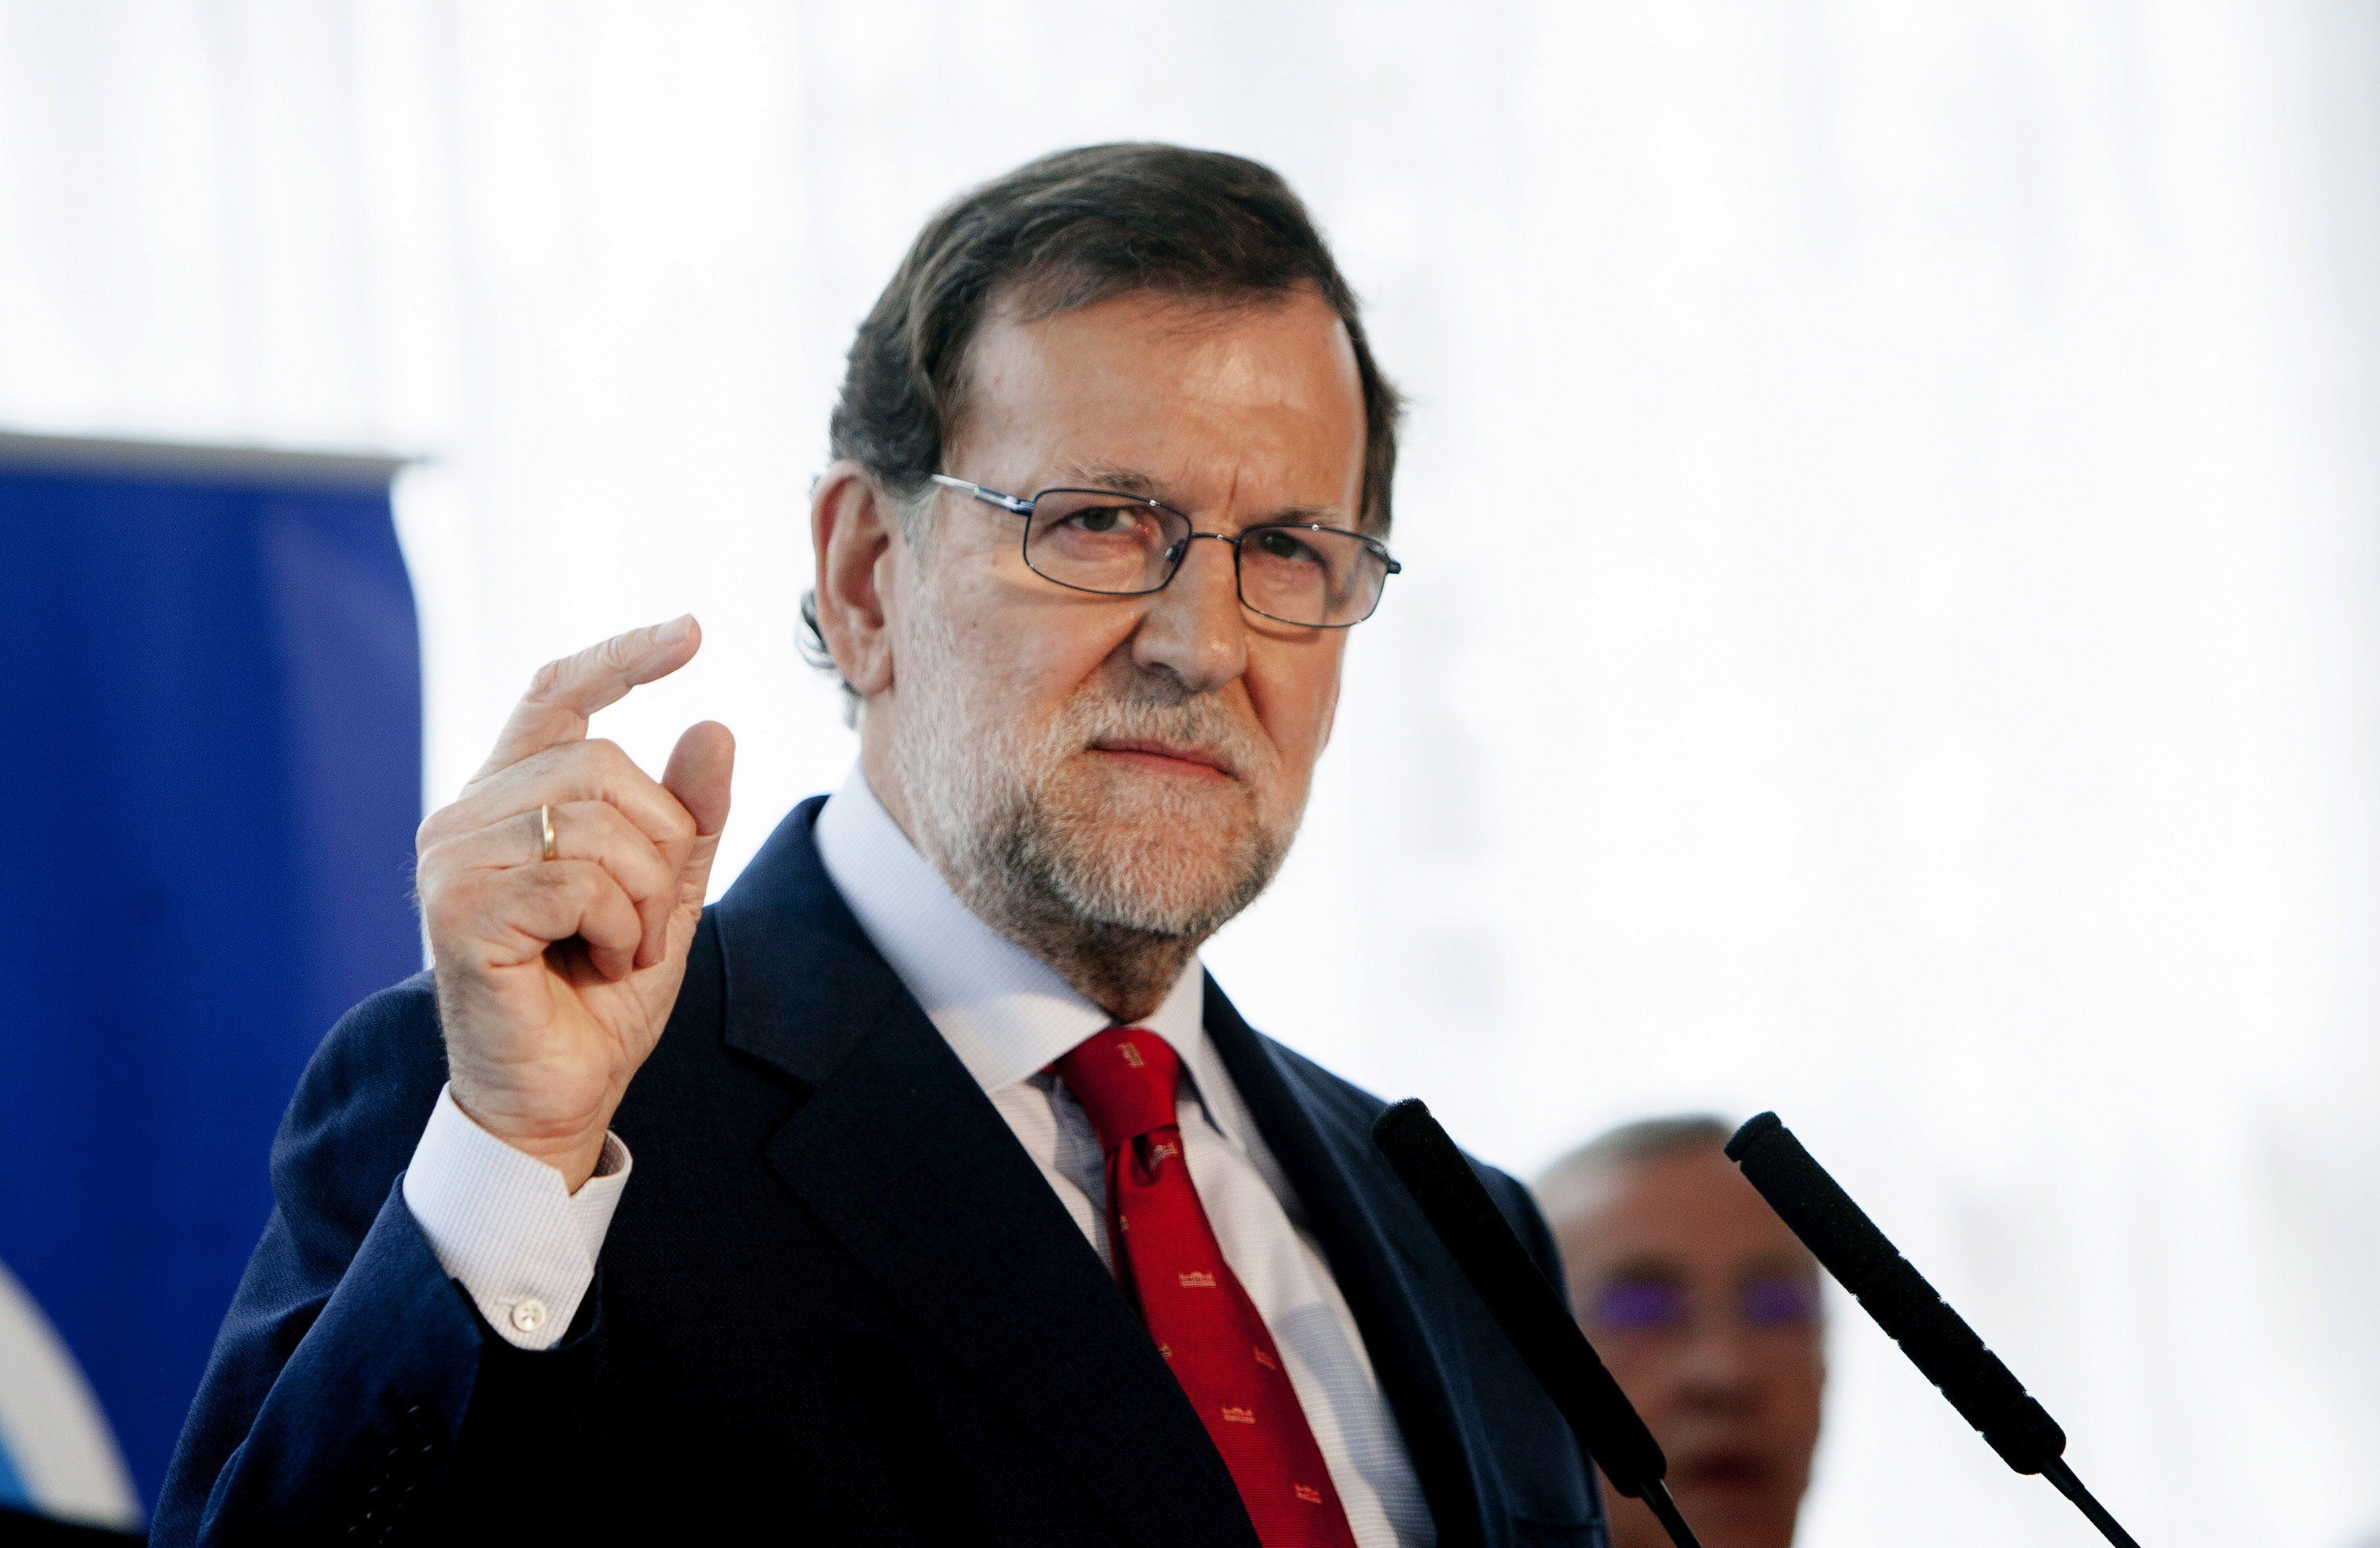 Rajoy "camina ràpid" en direcció al seu votant